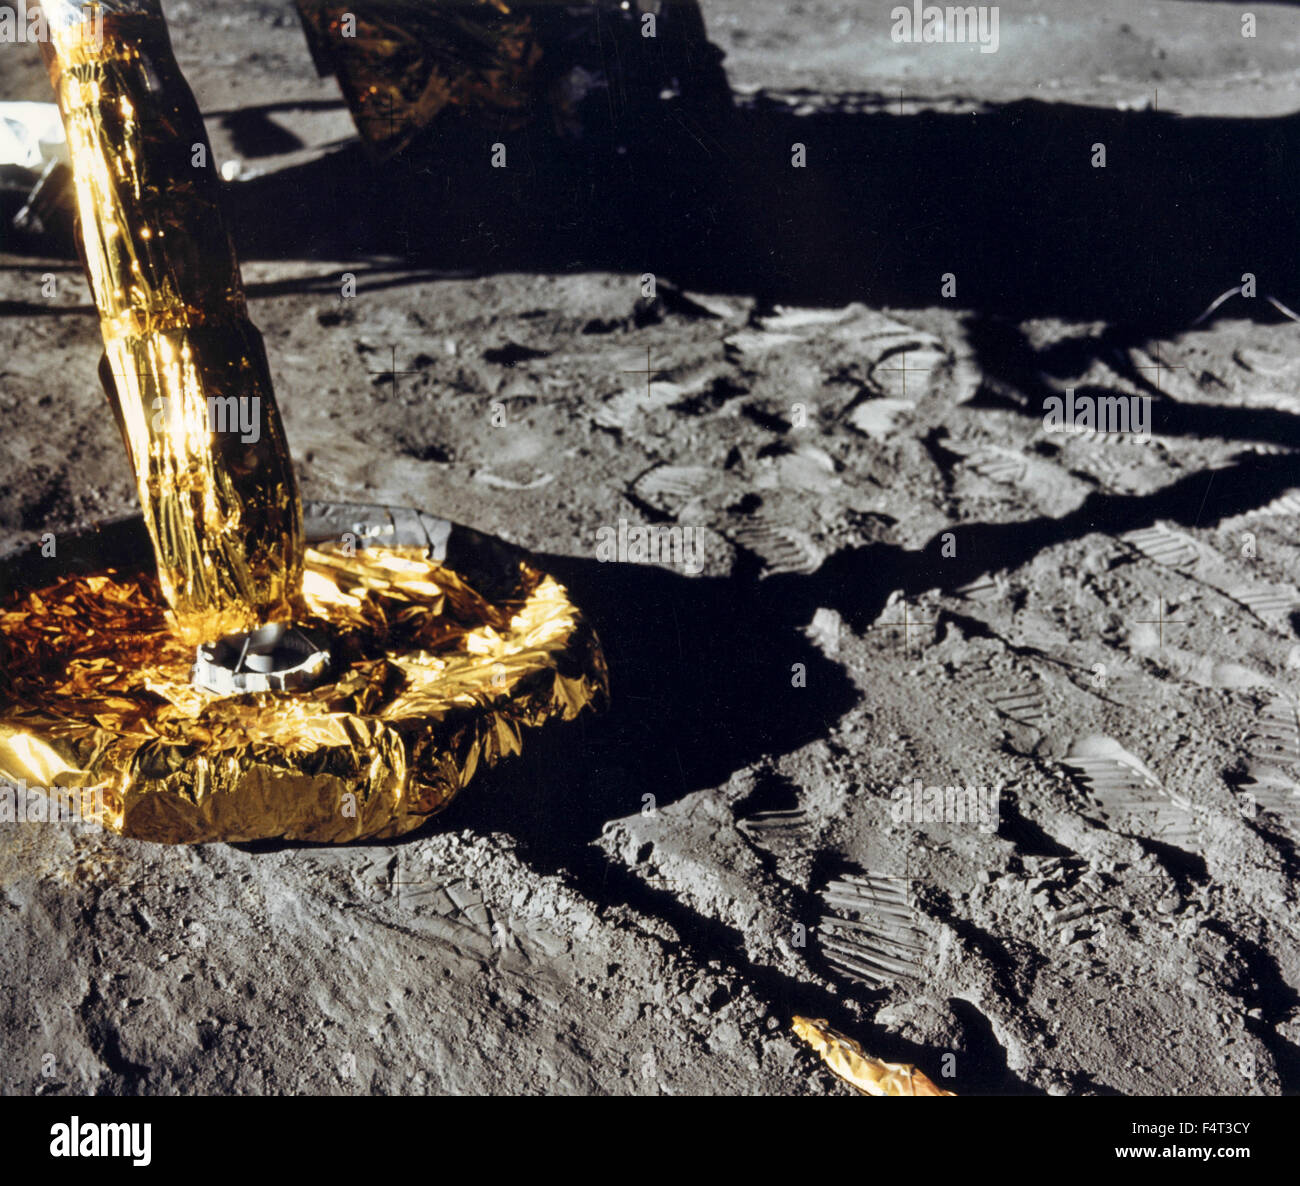 Le module lunaire d'Apollo 11 sur la surface lunaire, la Lune Banque D'Images